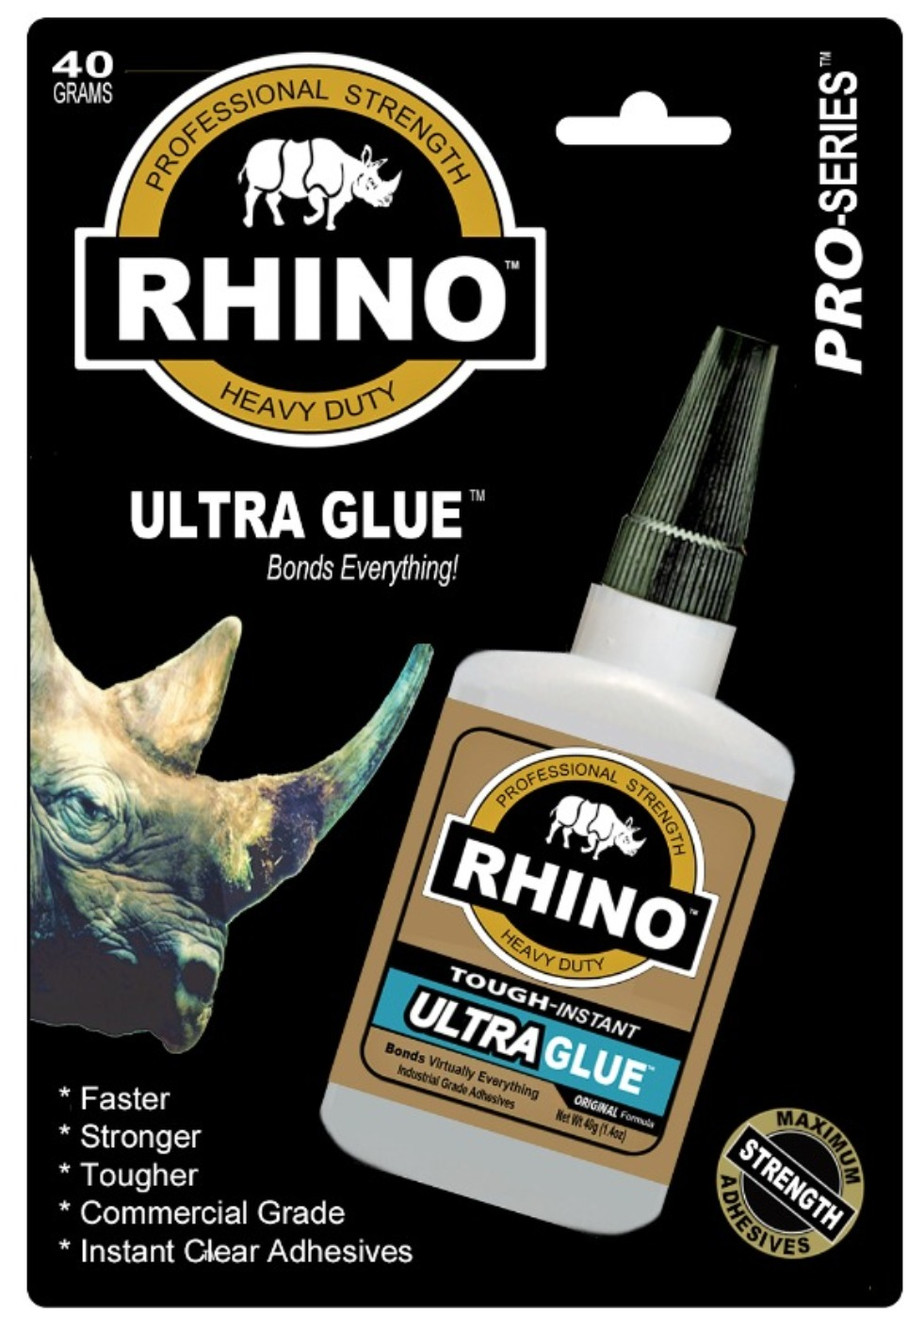 www.rhinoglue.com